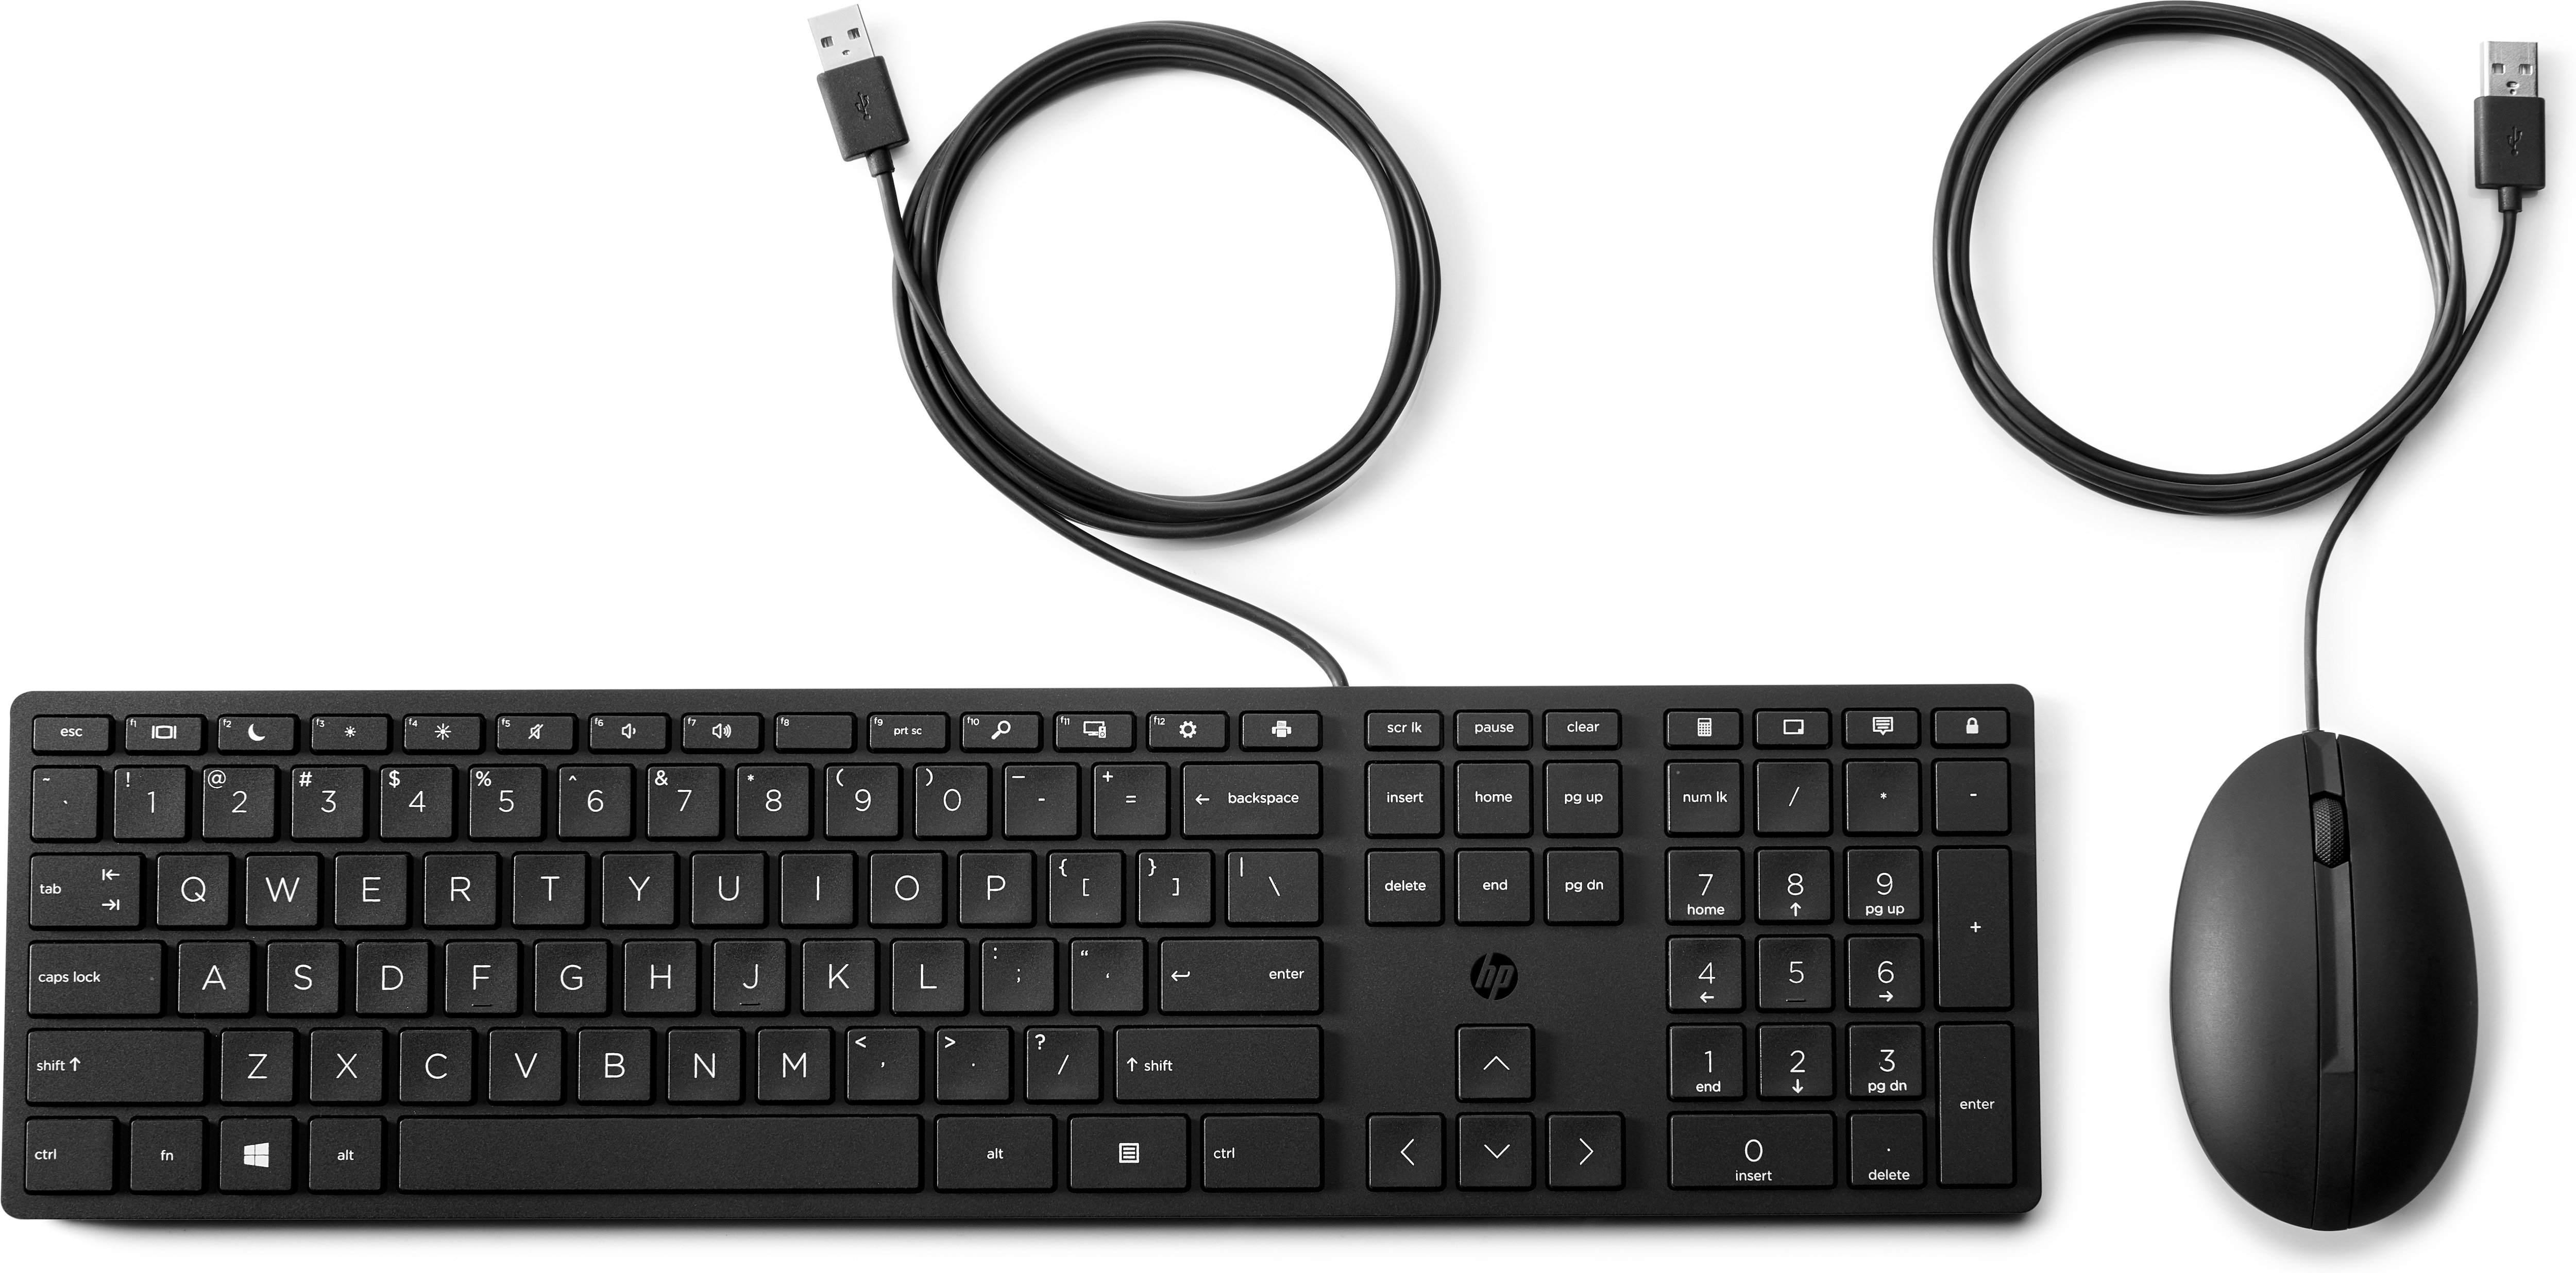 HP Wired Desktop 320MK Maus und Tastatur